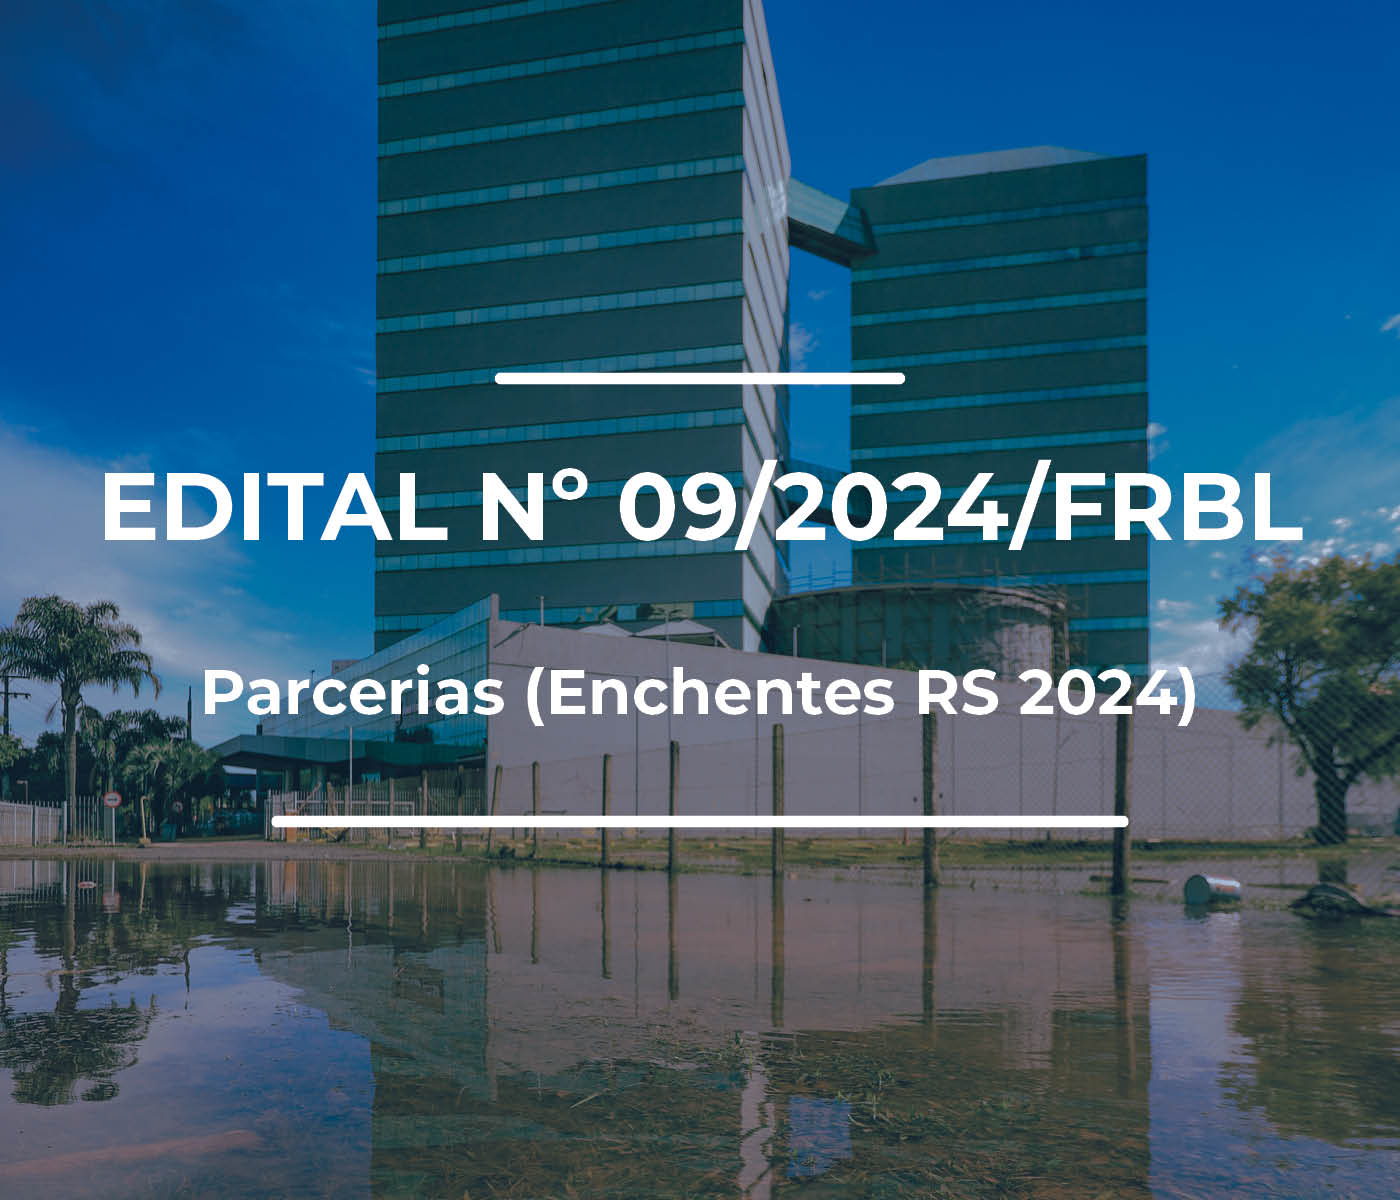 Edital nº 09/2024/FRBL 